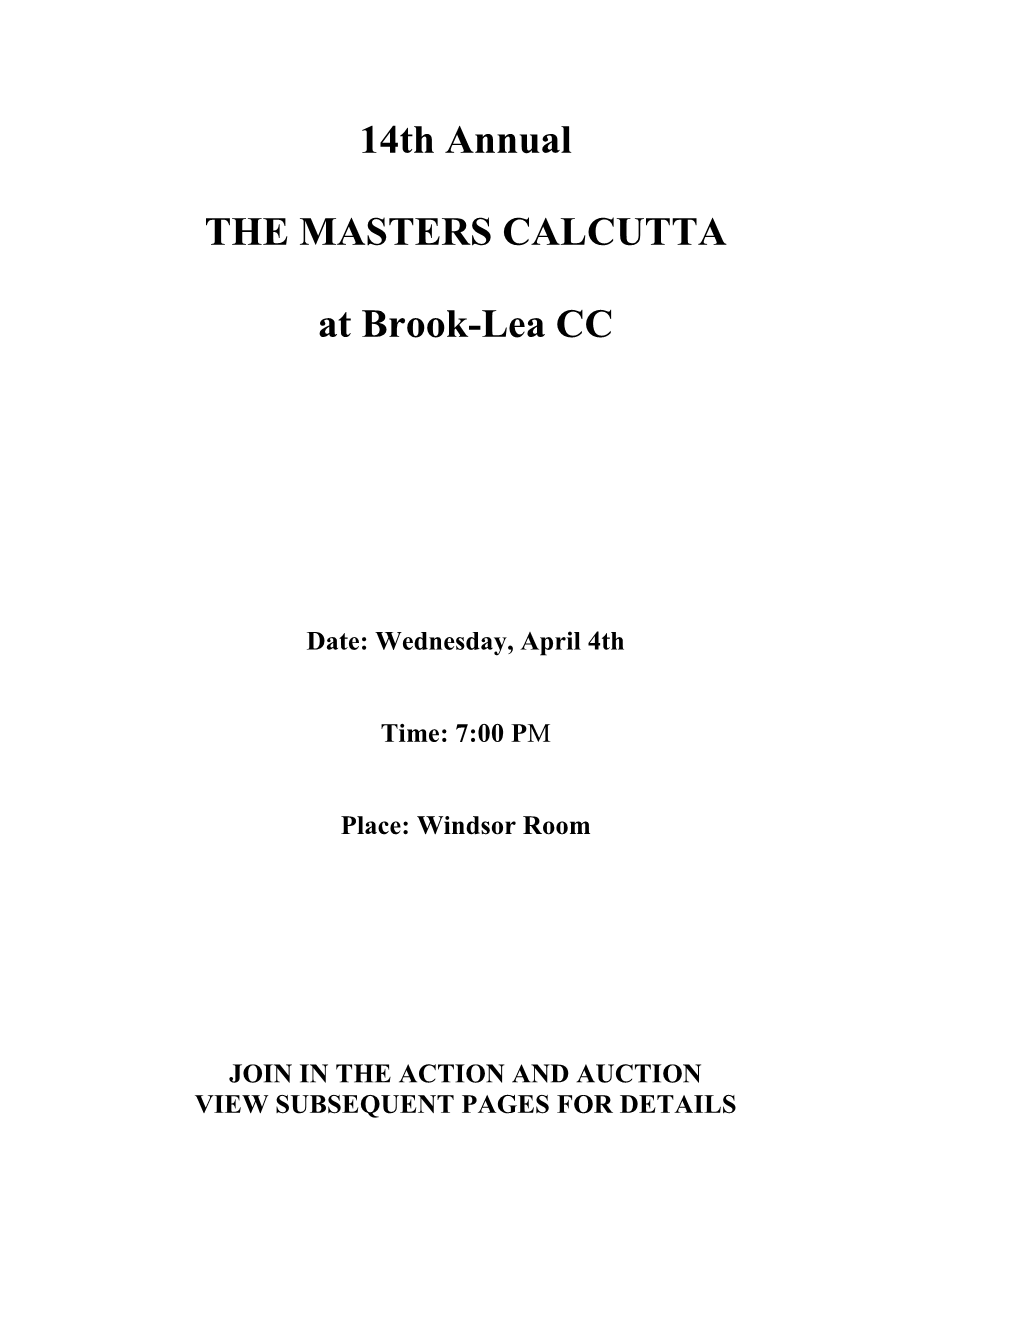 2018 Masters Calcutta